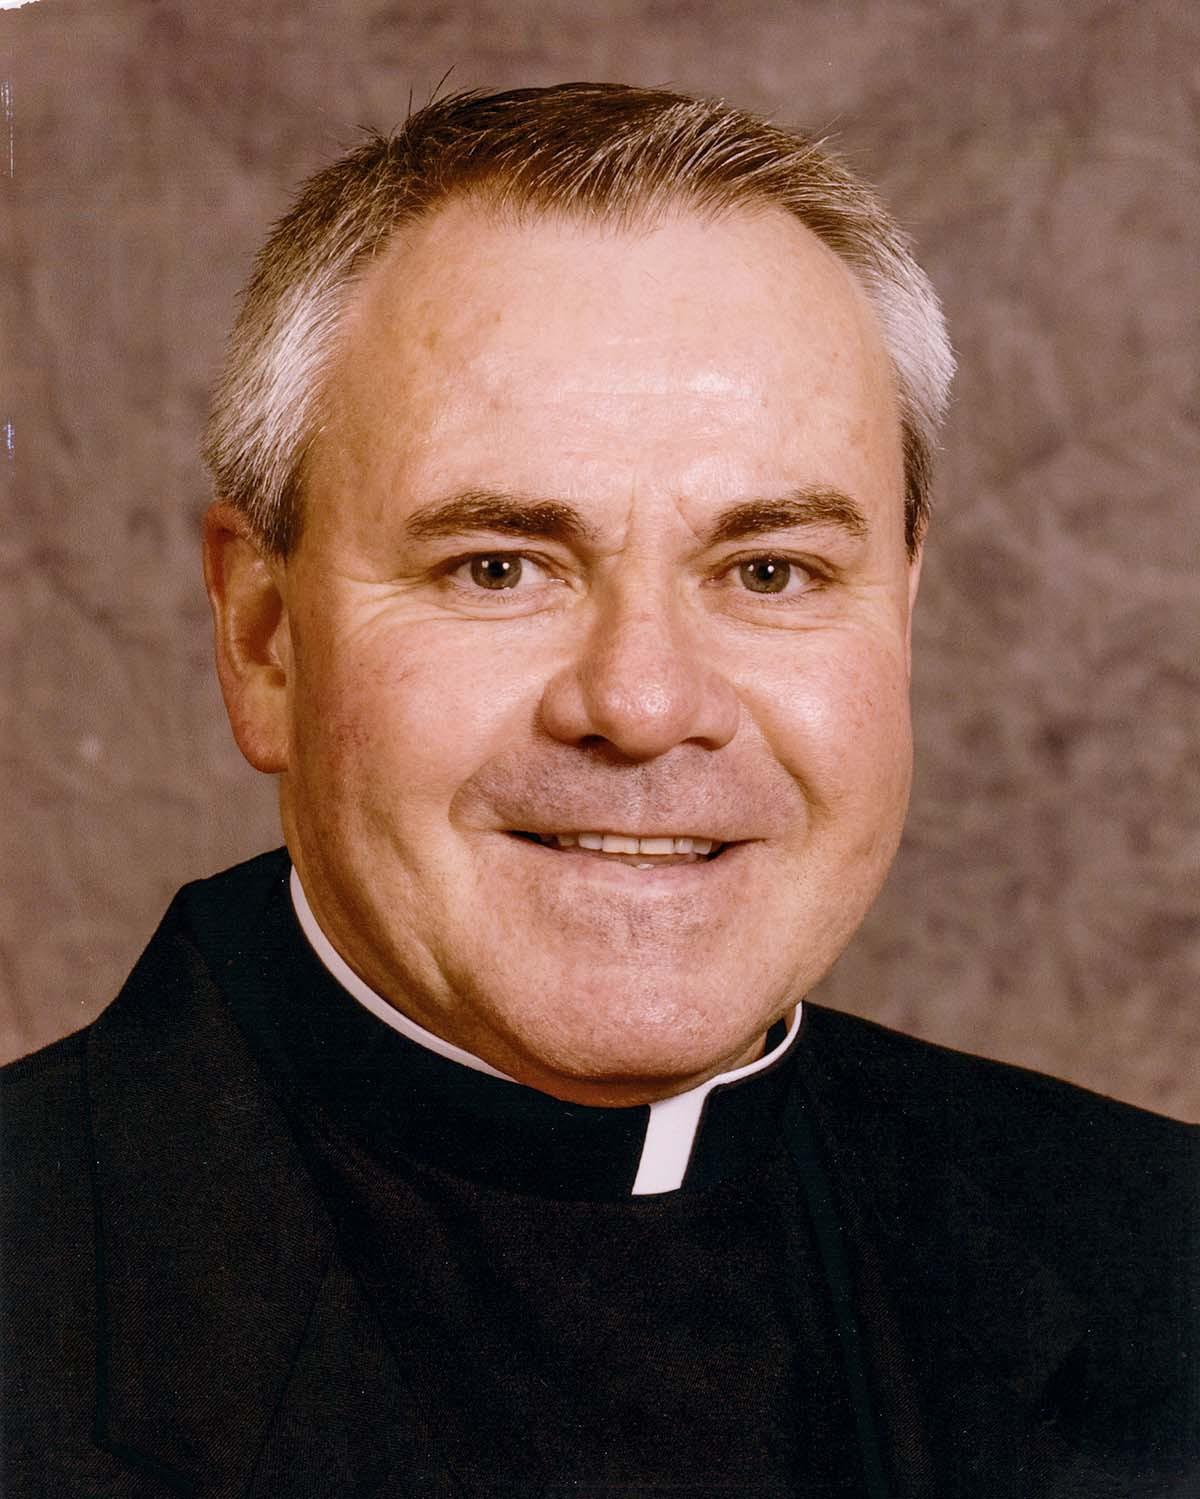 Father Thomas Von Behren